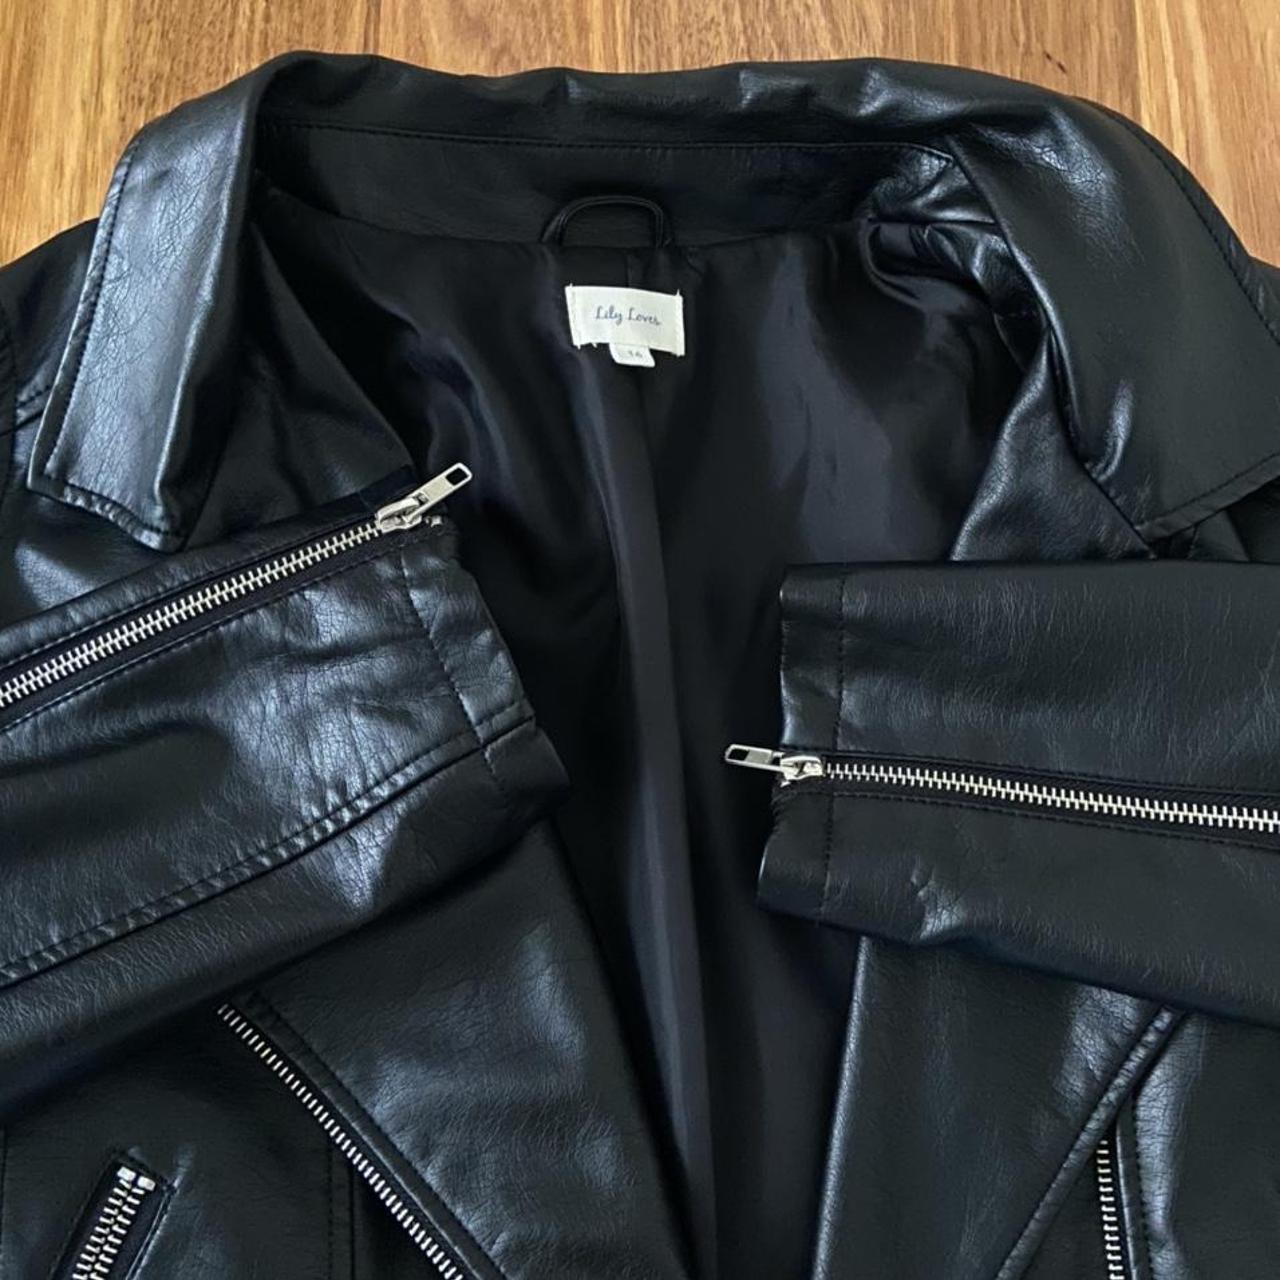 chic faux leather jacket 🕶 size: 16, but fits aus... - Depop